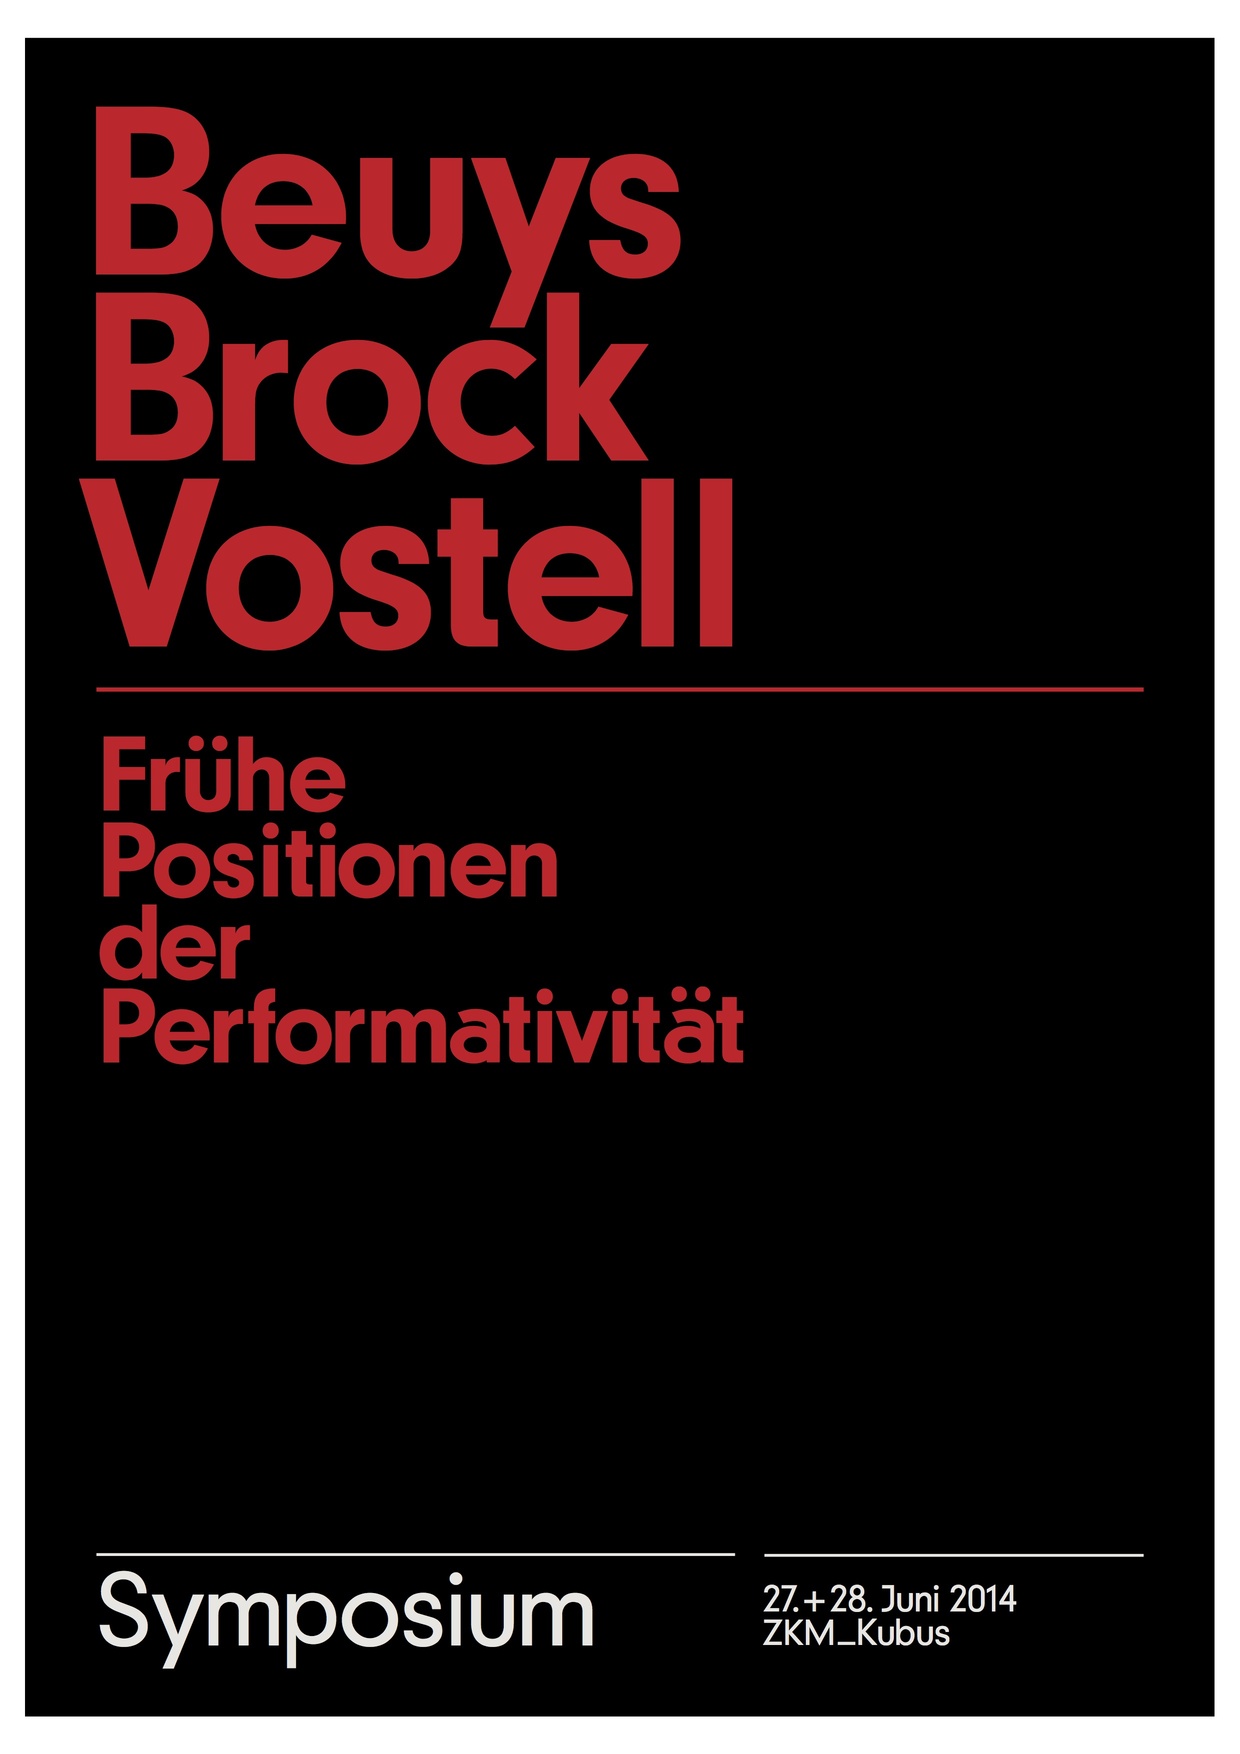 Symposium: Beuys Brock Vostell. Frühe Positionen der Performativität, Bild: 27./28.06.2014 im ZKM Kubus, Karlsruhe..